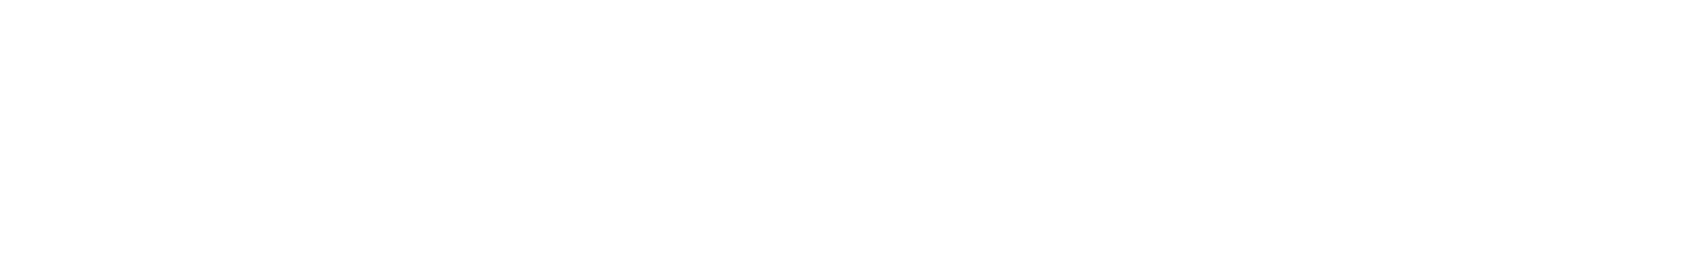 First Advantage logo grand pour les fonds sombres (PNG transparent)